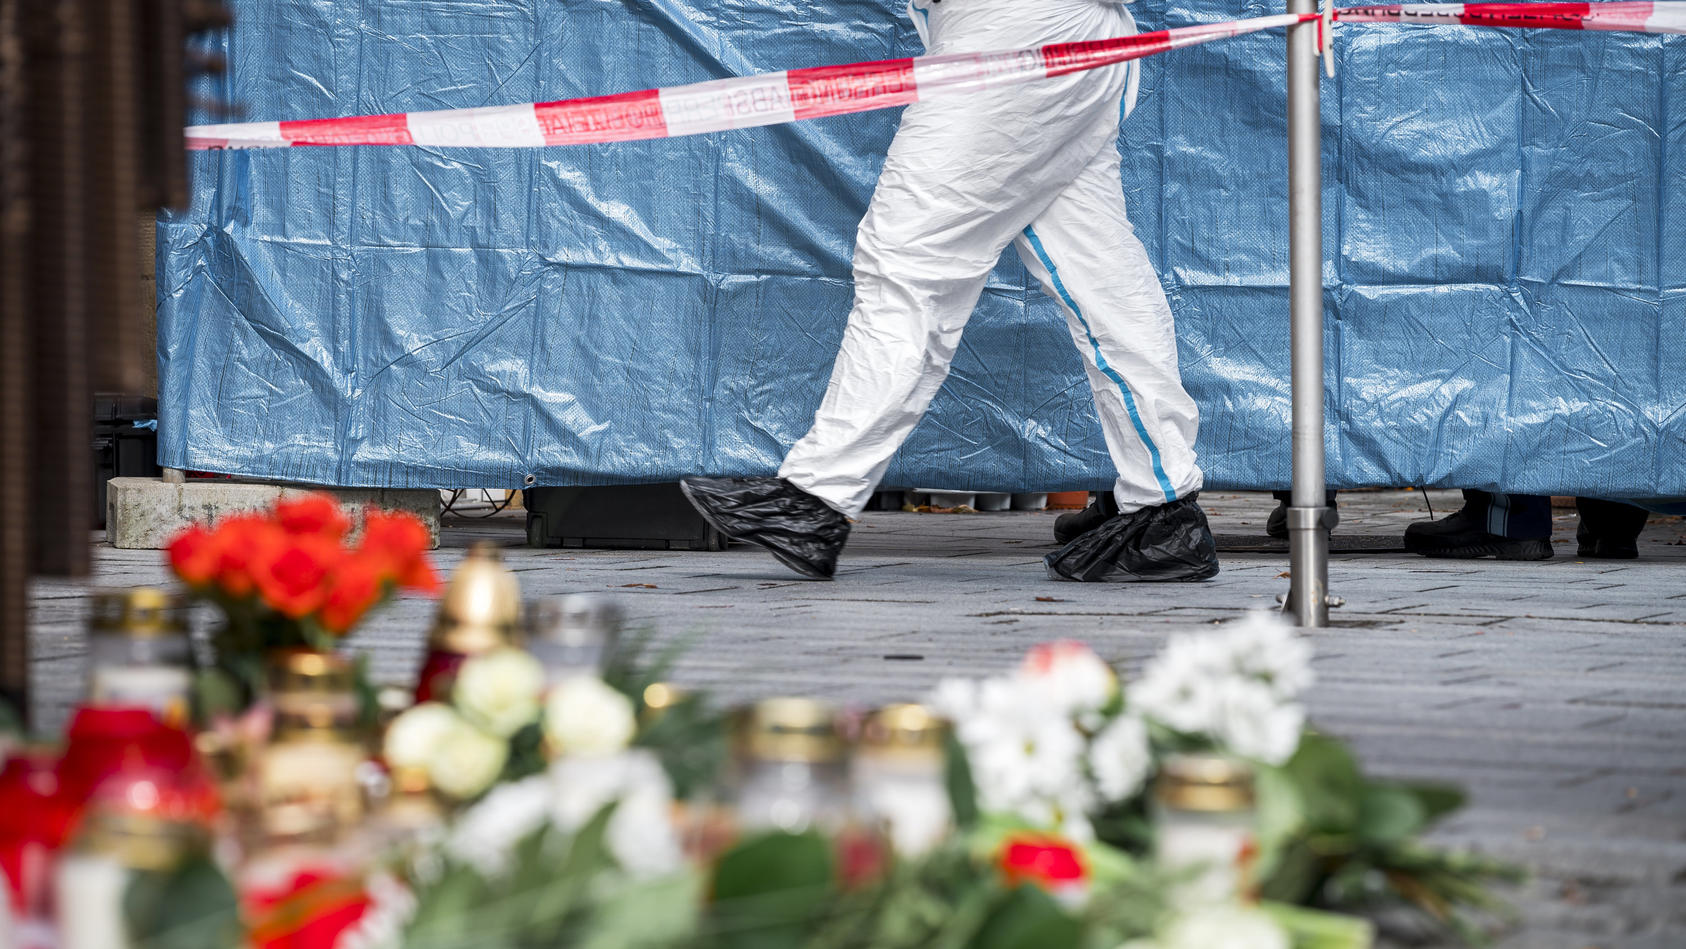 13.03.2023, Bayern, Lichtenfels: Ein Mitarbeiter der Spurensicherung geht in den abgesperrten Bereich vor dem Blumengeschäft, in dem am Freitagabend eine leblose Frau aufgefunden wurde. Spaziergänger hatten die tote 50-Jährige in dem Blumenladen in d